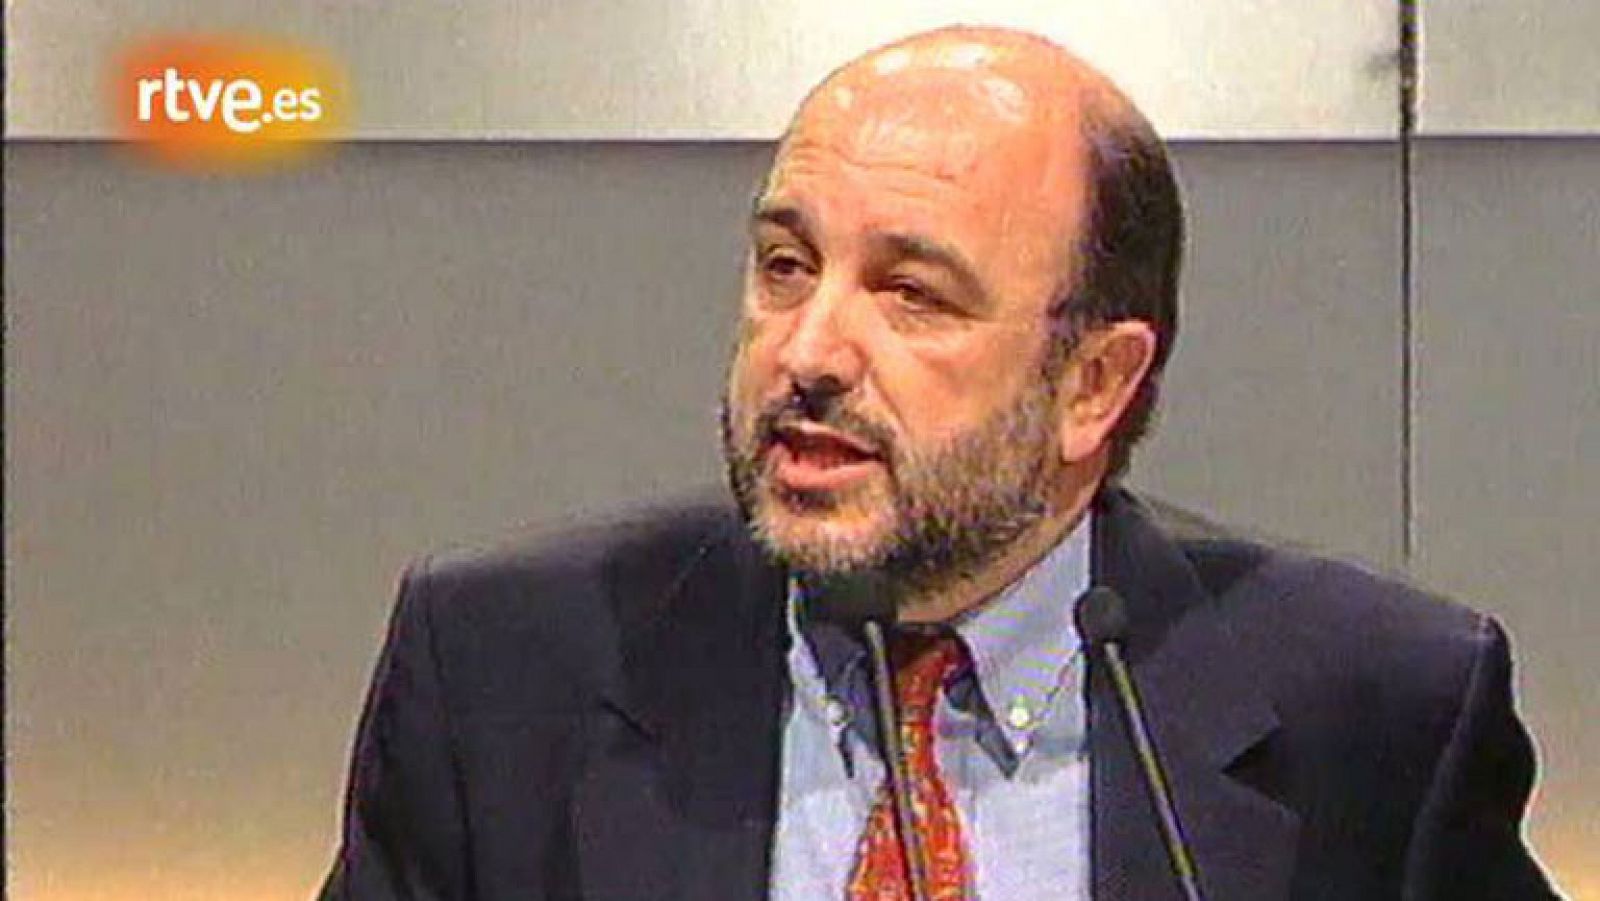 Informe Semanal (1997): 34 Congreso PSOE, Almunia secretario general